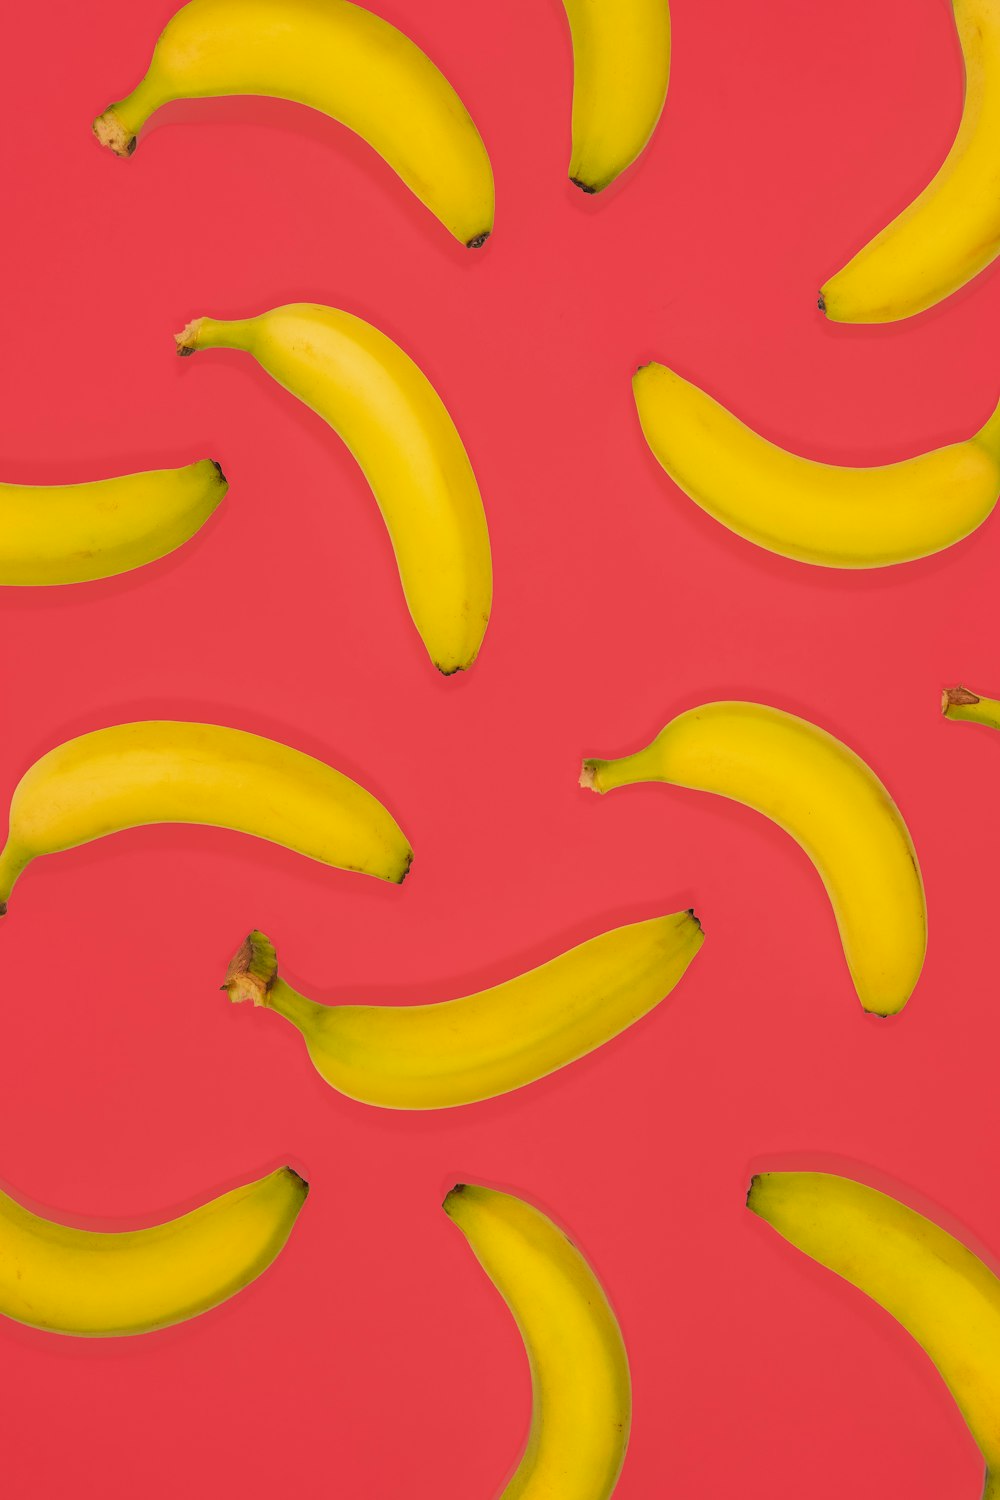 Fruits de banane jaune sur la surface rose